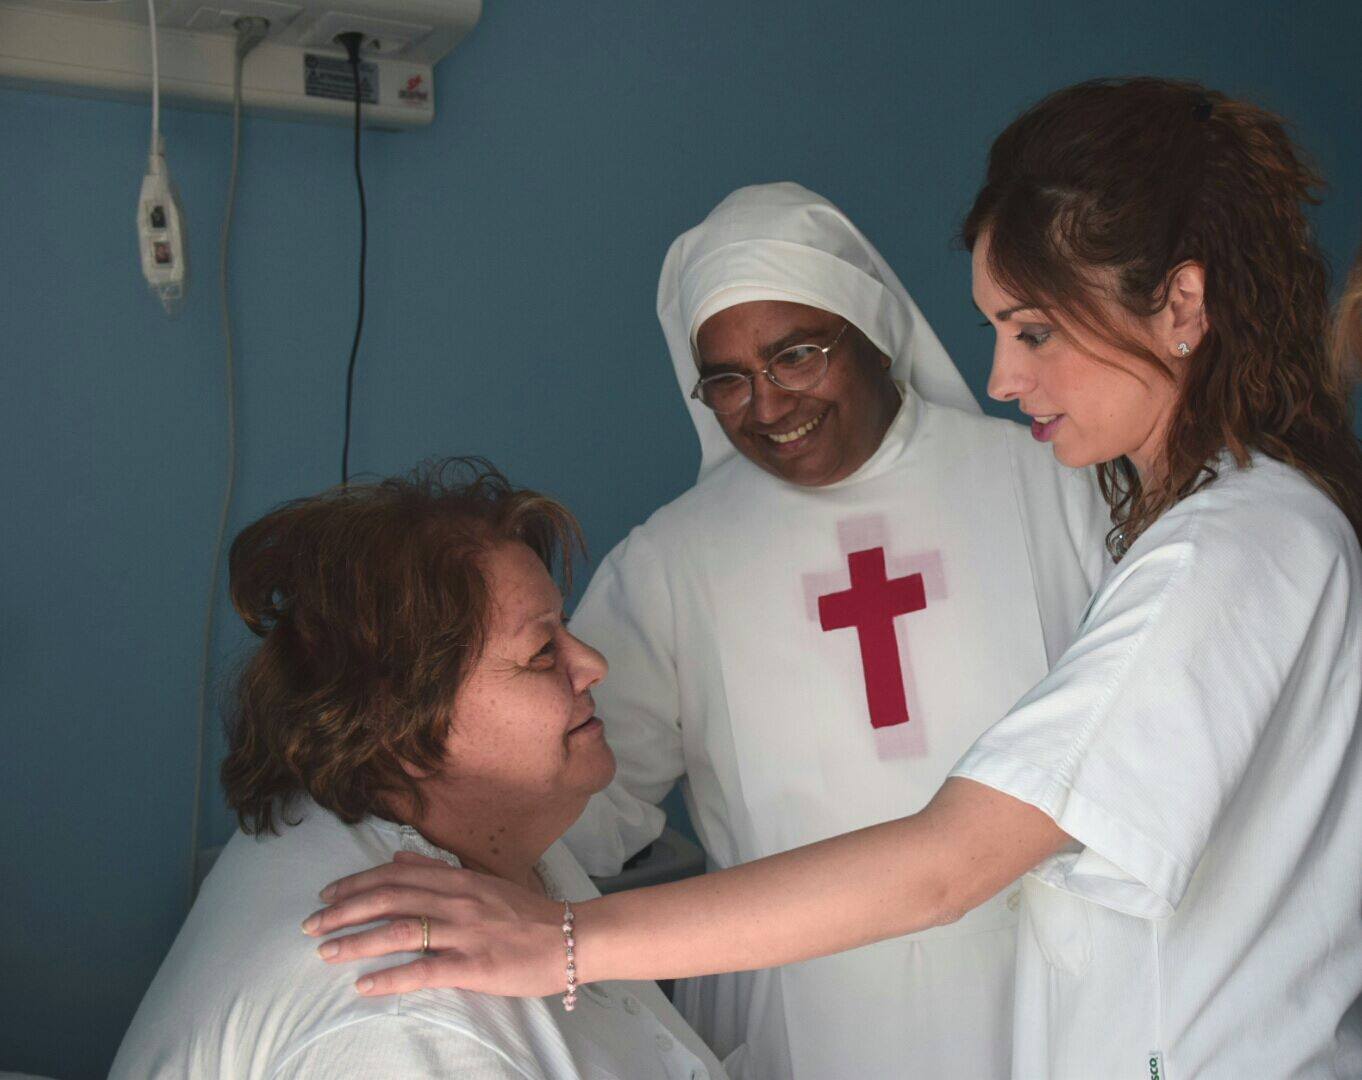  Sanità: per la festa della mamma, visite senologiche gratuite nell’ospedale “Santa Maria della Pietà” di Casoria